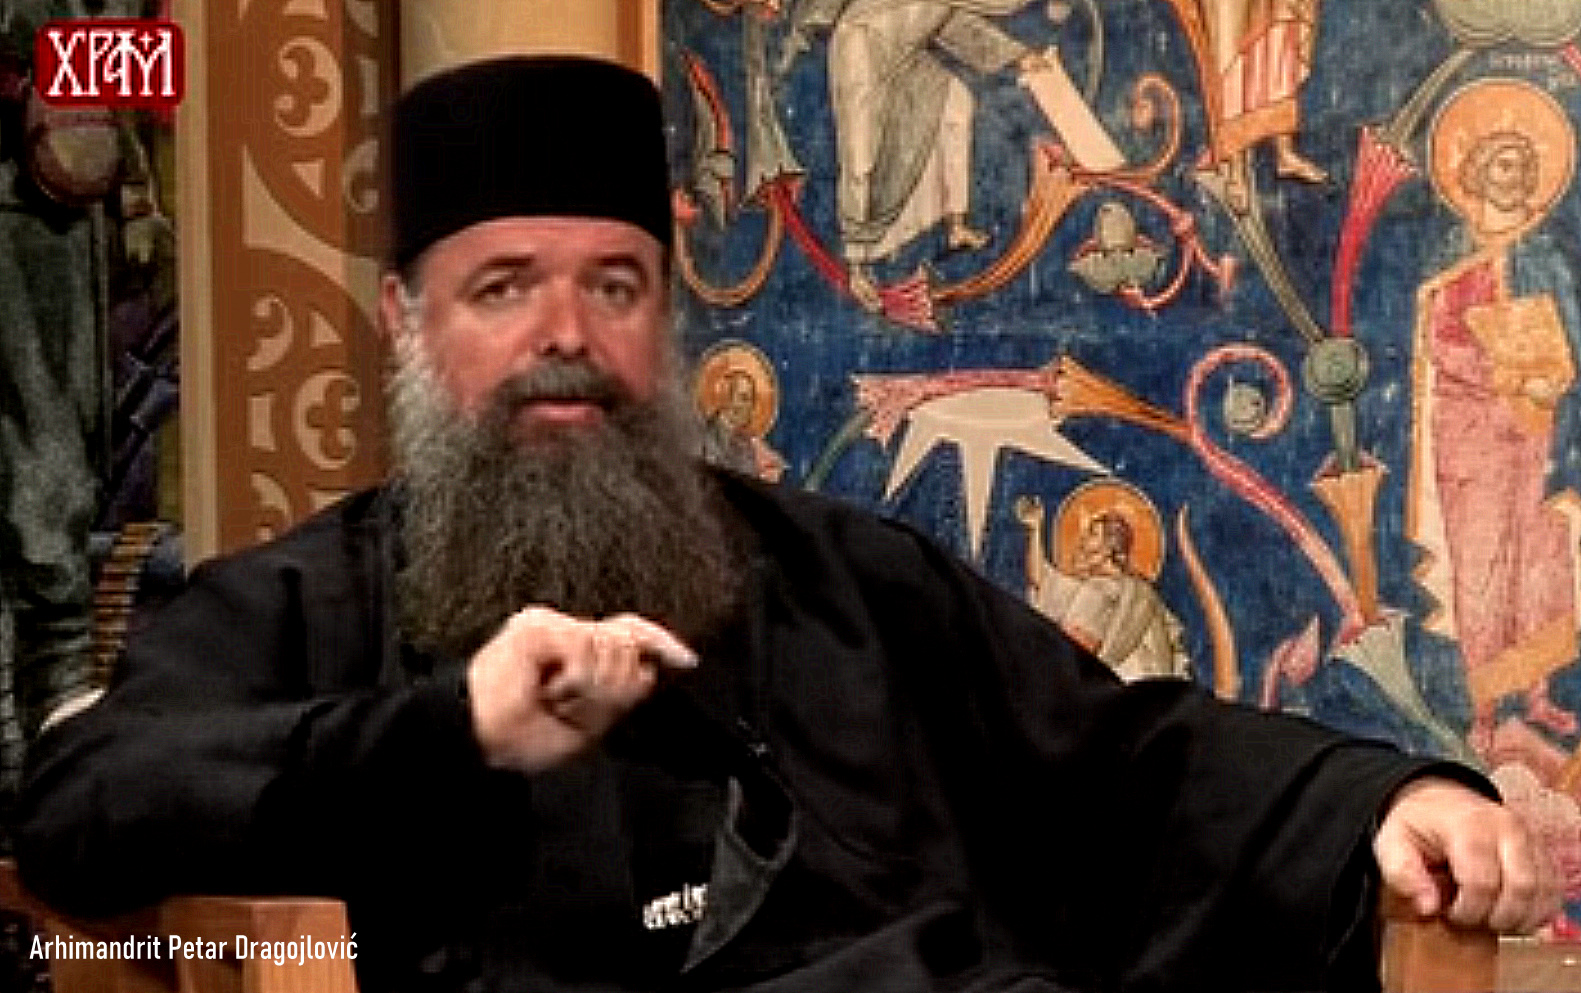 AUTOKEFALNA Crnogorska pravoslavna crkva, to nije bauk reći